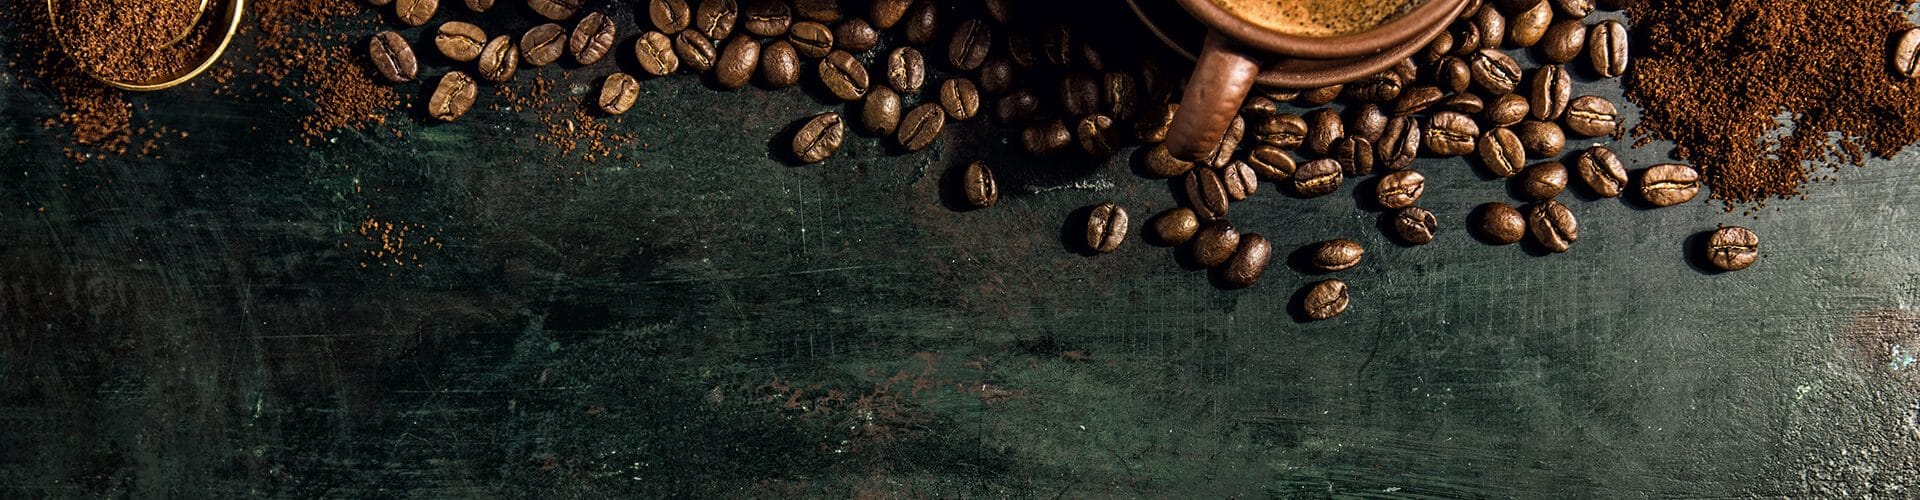 Grãos de café, café em pó e café passado sobre mesa de madeira para ilustrar os benefícios do café